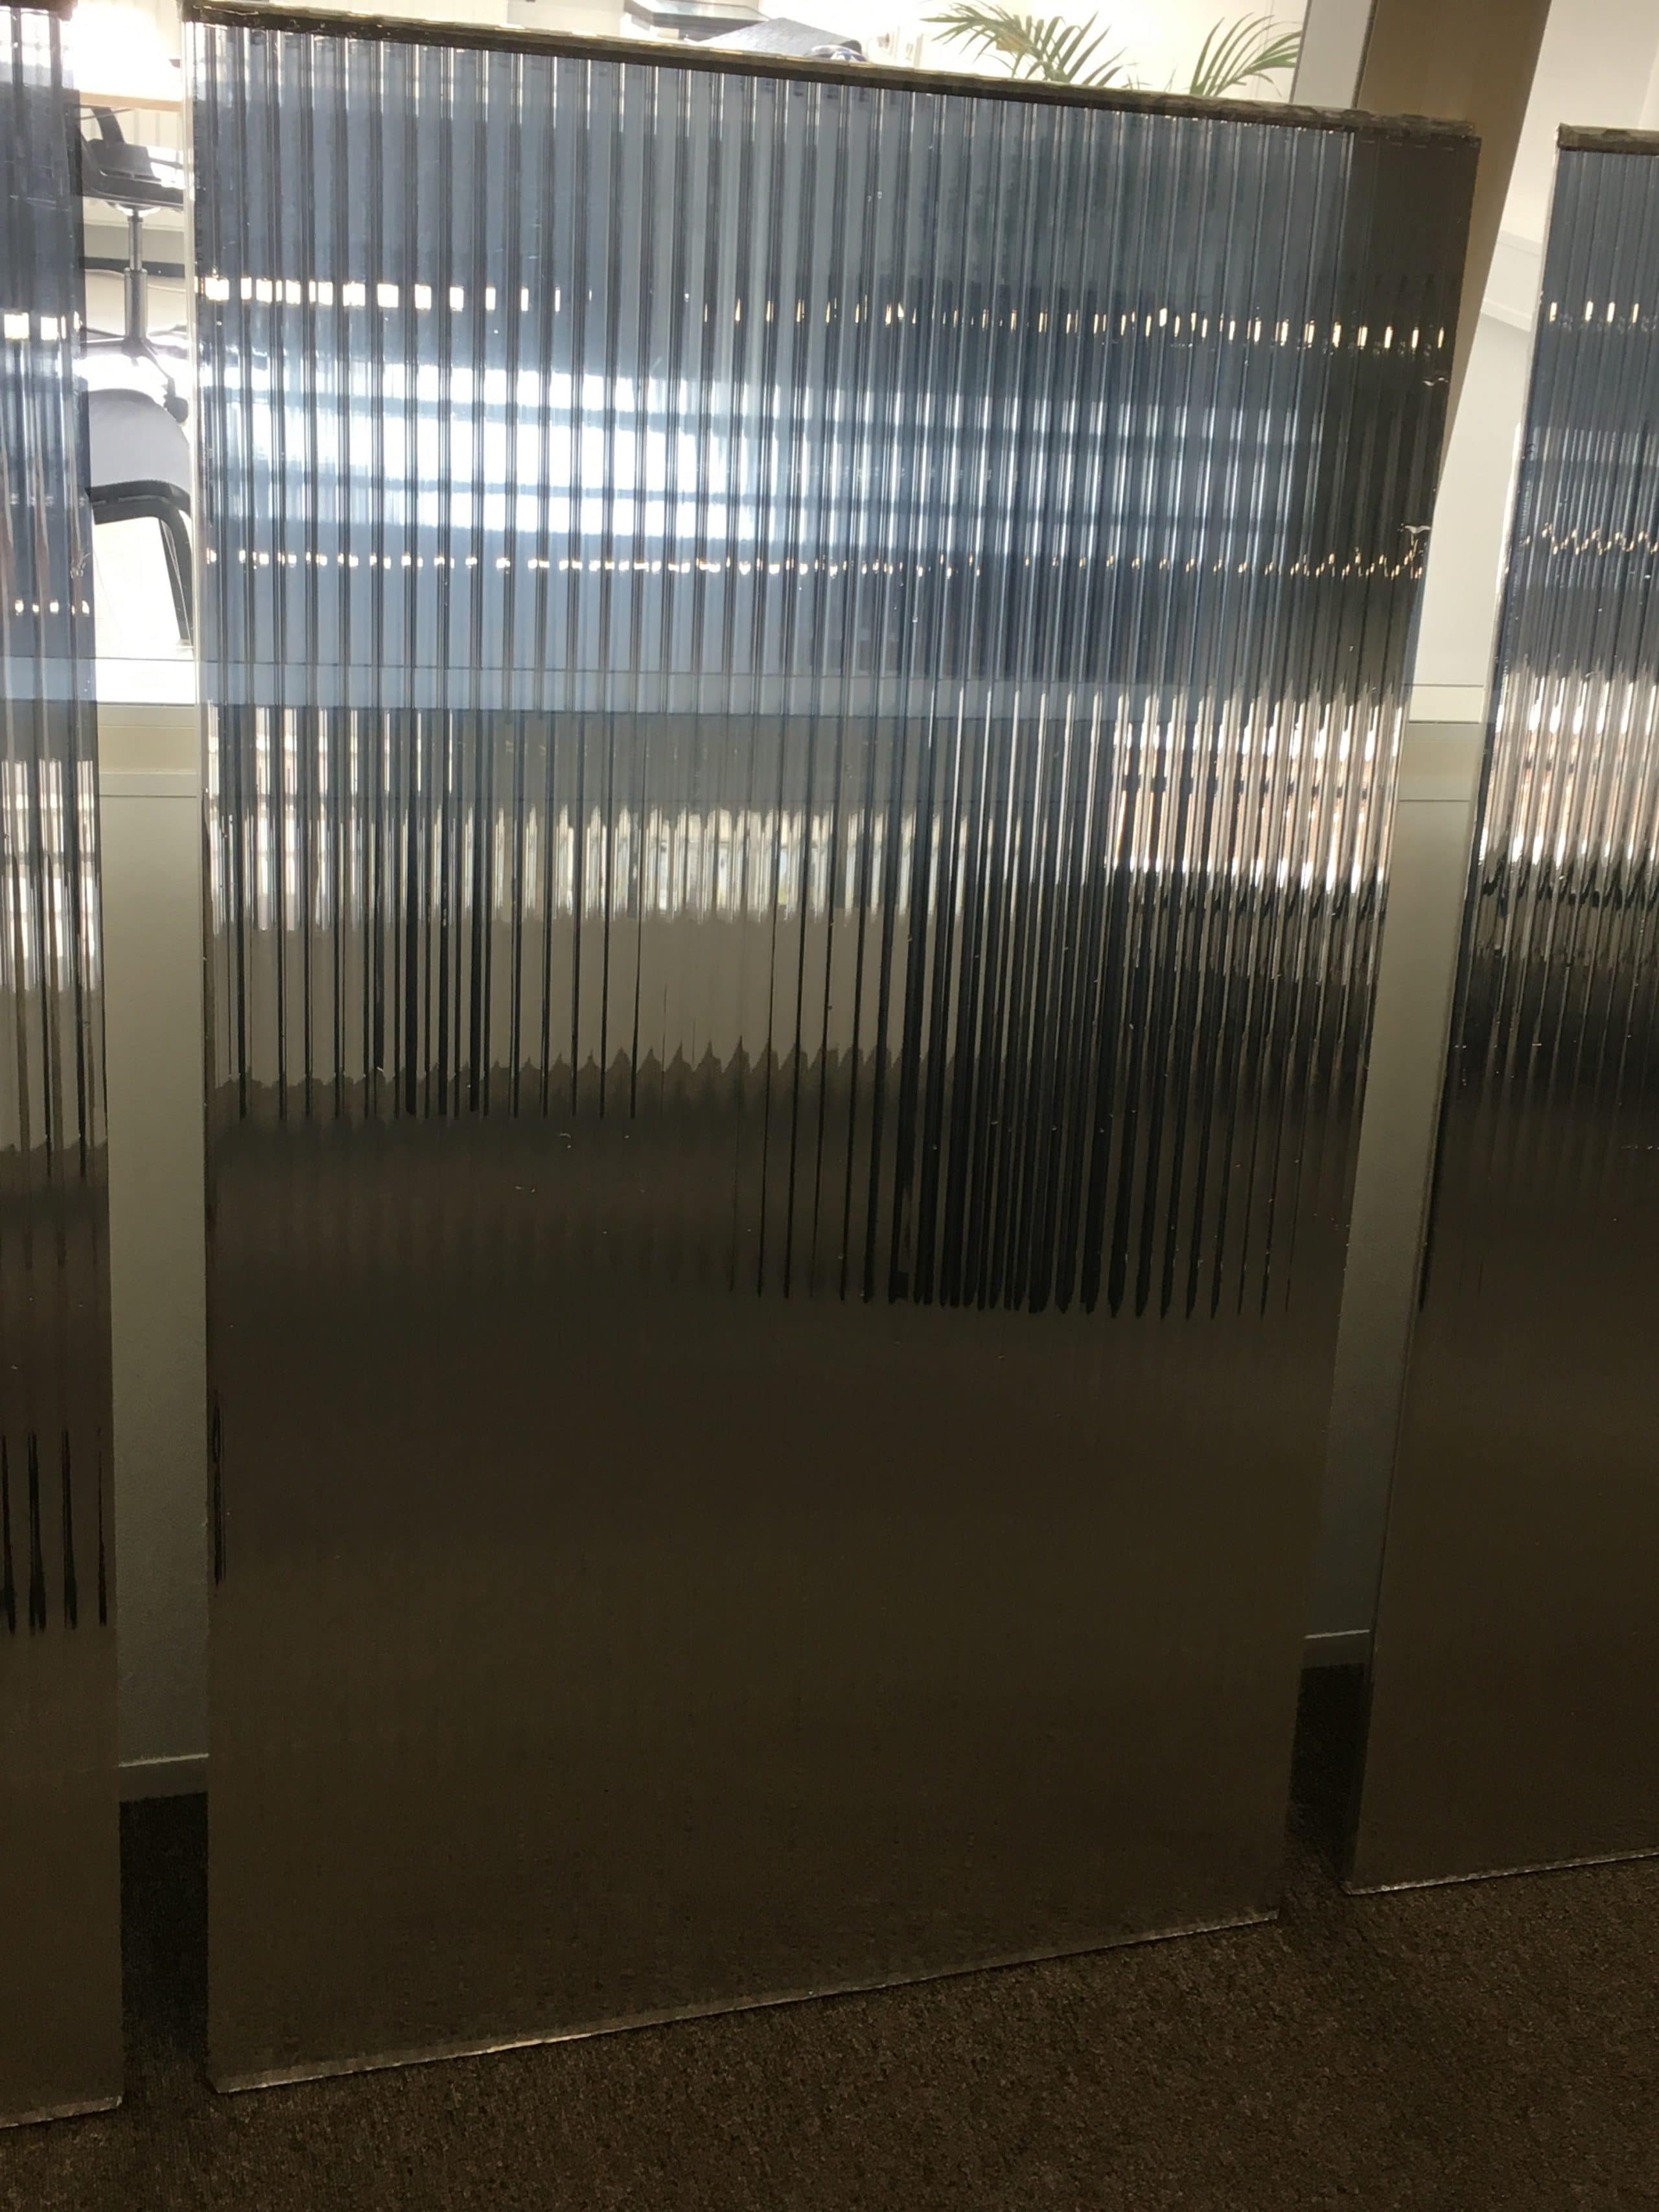 Kunststof panelen voorzien van Sunblock Zilver 20 worden onder lichtkoepels gemonteerd teneinde zonnewarmte te reflecteren. Deze oplossing is makkelijk te verwijderen op een later tijdstip indien nodig